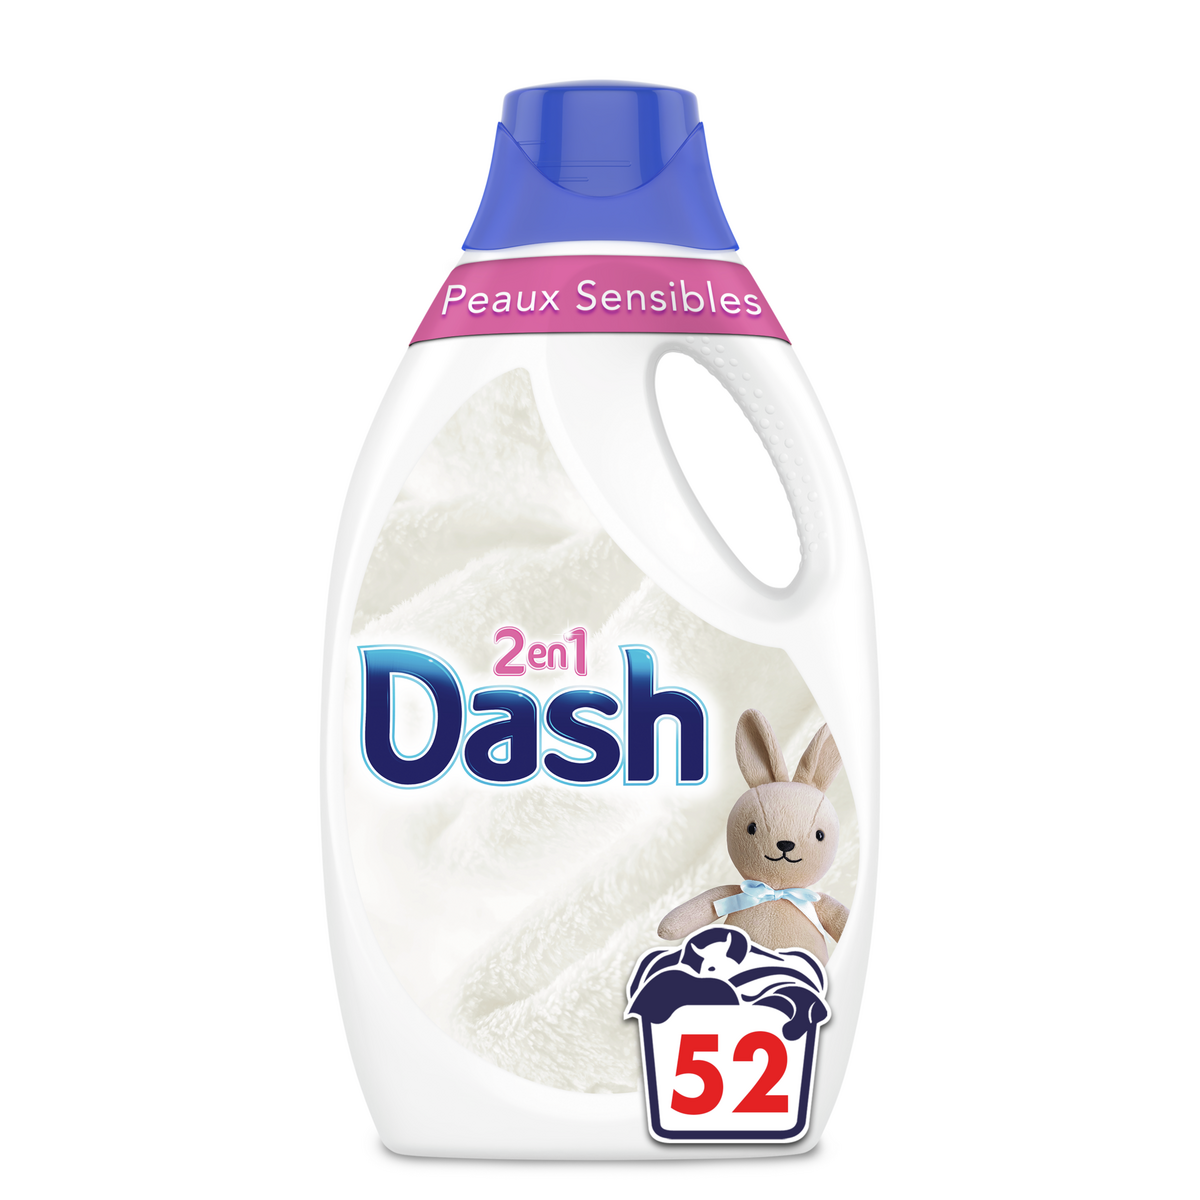 Dash 2en1 Lessive Liquide Peaux Sensibles 46 Lavages, Pour Peaux